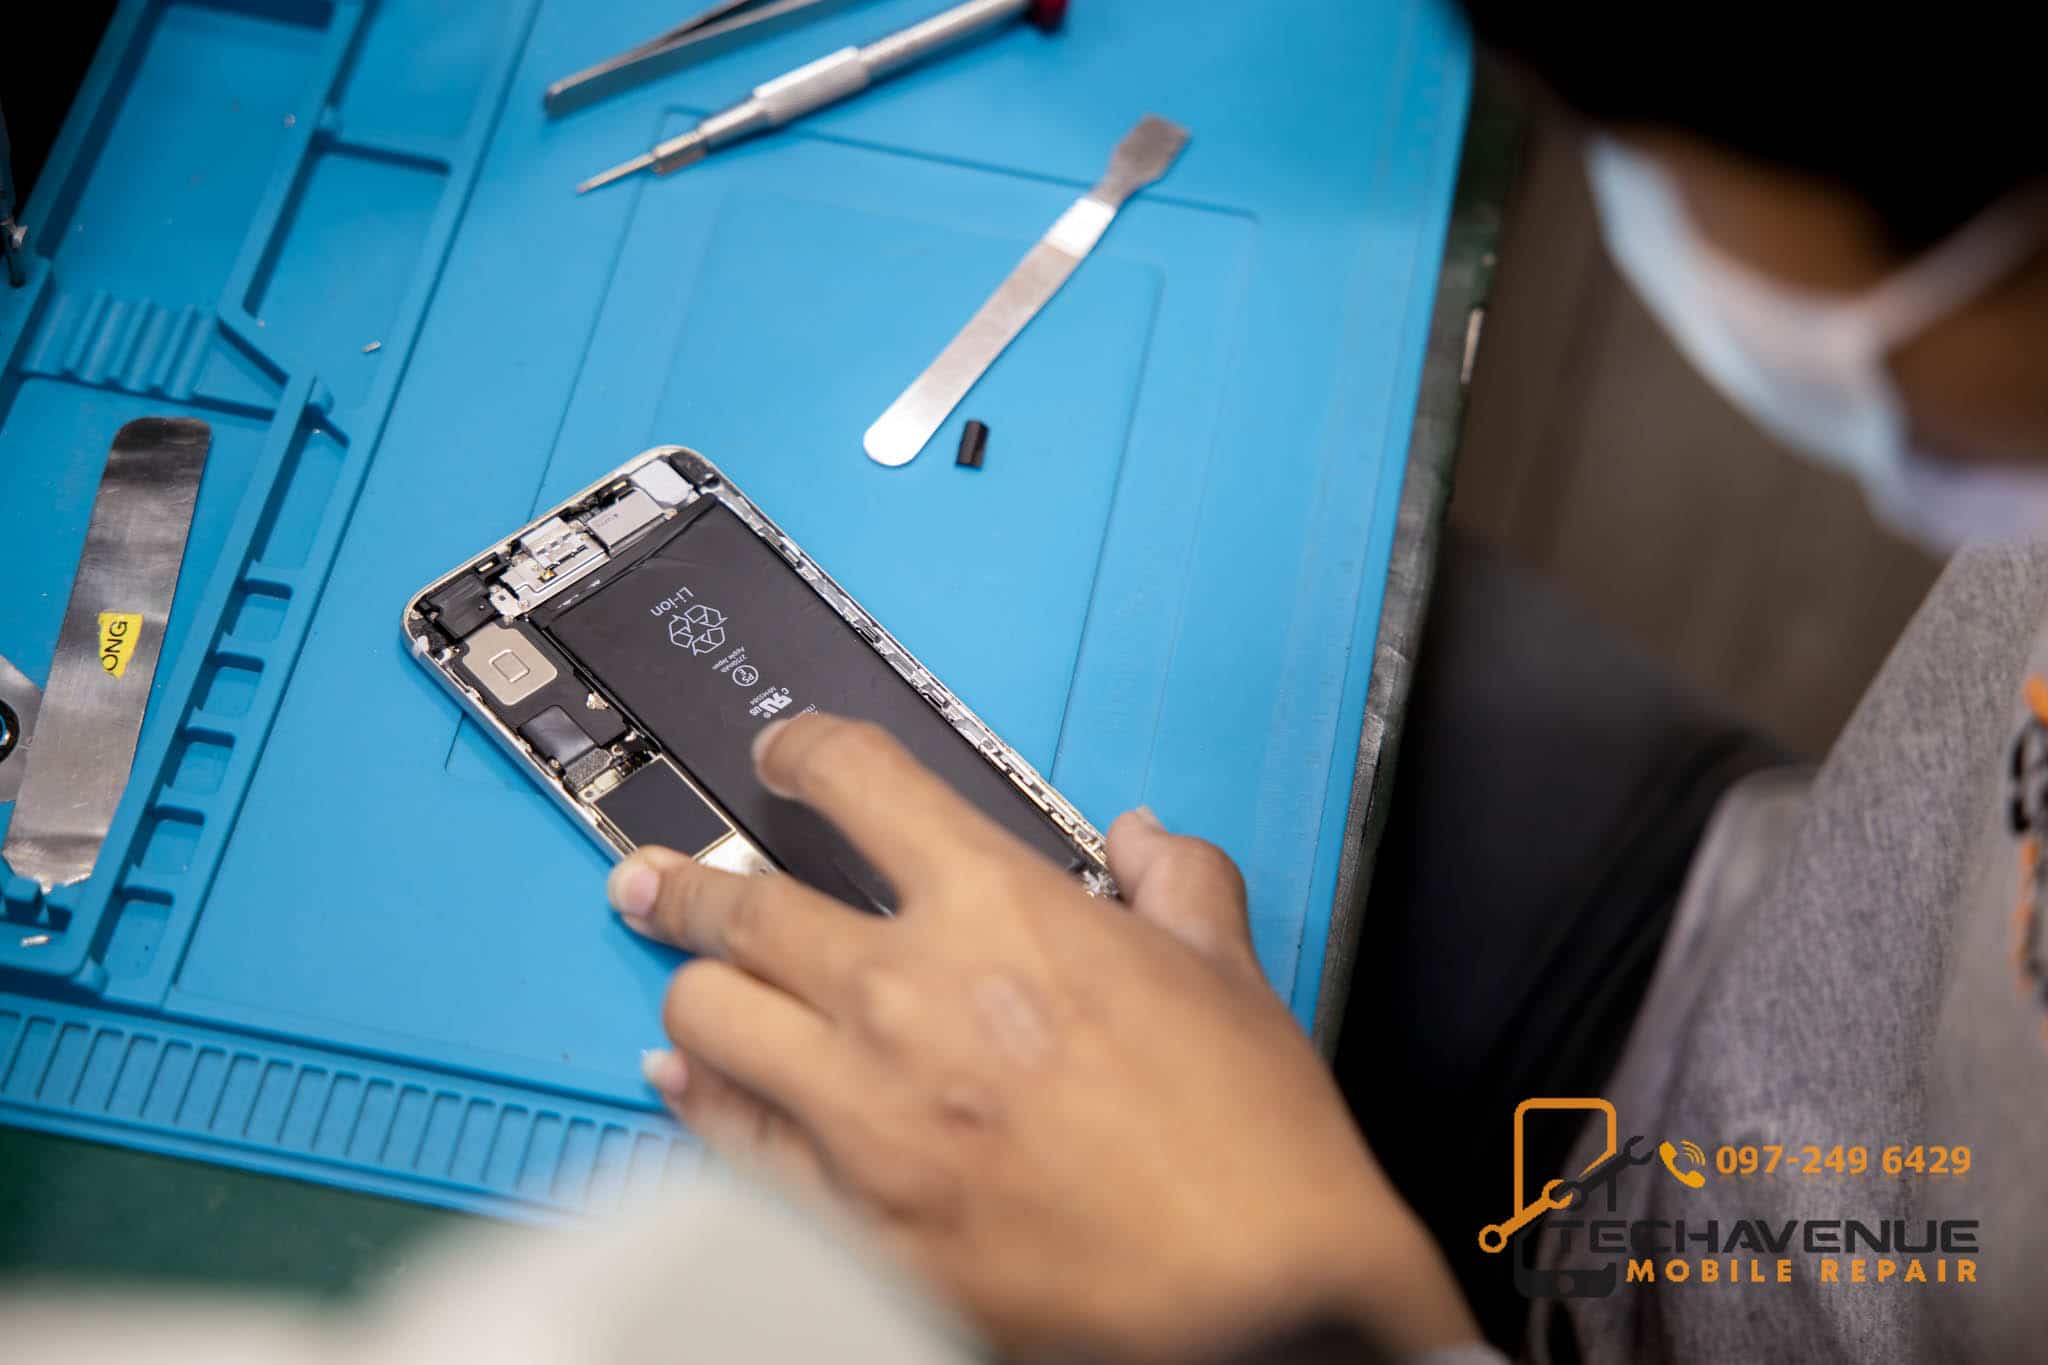 Huawei หัวเว่ย P20 เครื่องร้อน ส่งซ่อมมือถือร้านไหนดีที่สุด 🥇 ศูนย์ซ่อม โทรศัพท์มือถือ มือถือทุกรุ่น ทุกยี่ห้อ iPhone | Apple | Samsung | Huawei